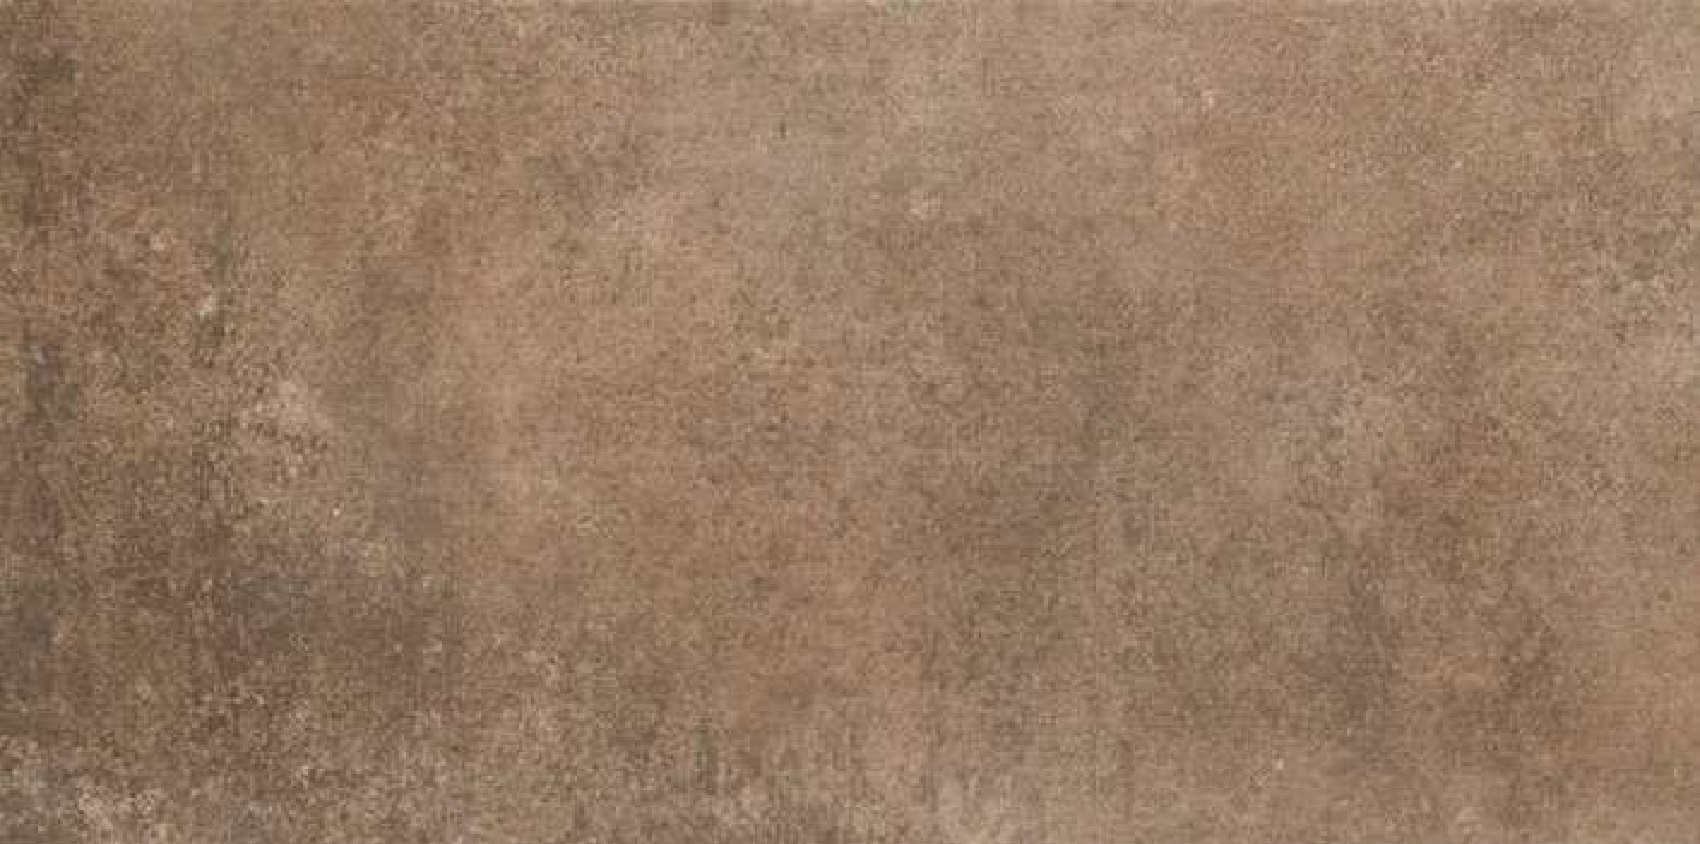 Carrelage anti dérapant grès cérame marron effet pierre ELVAS TIERRA ANTISLIP 30X60 - 1,08m²